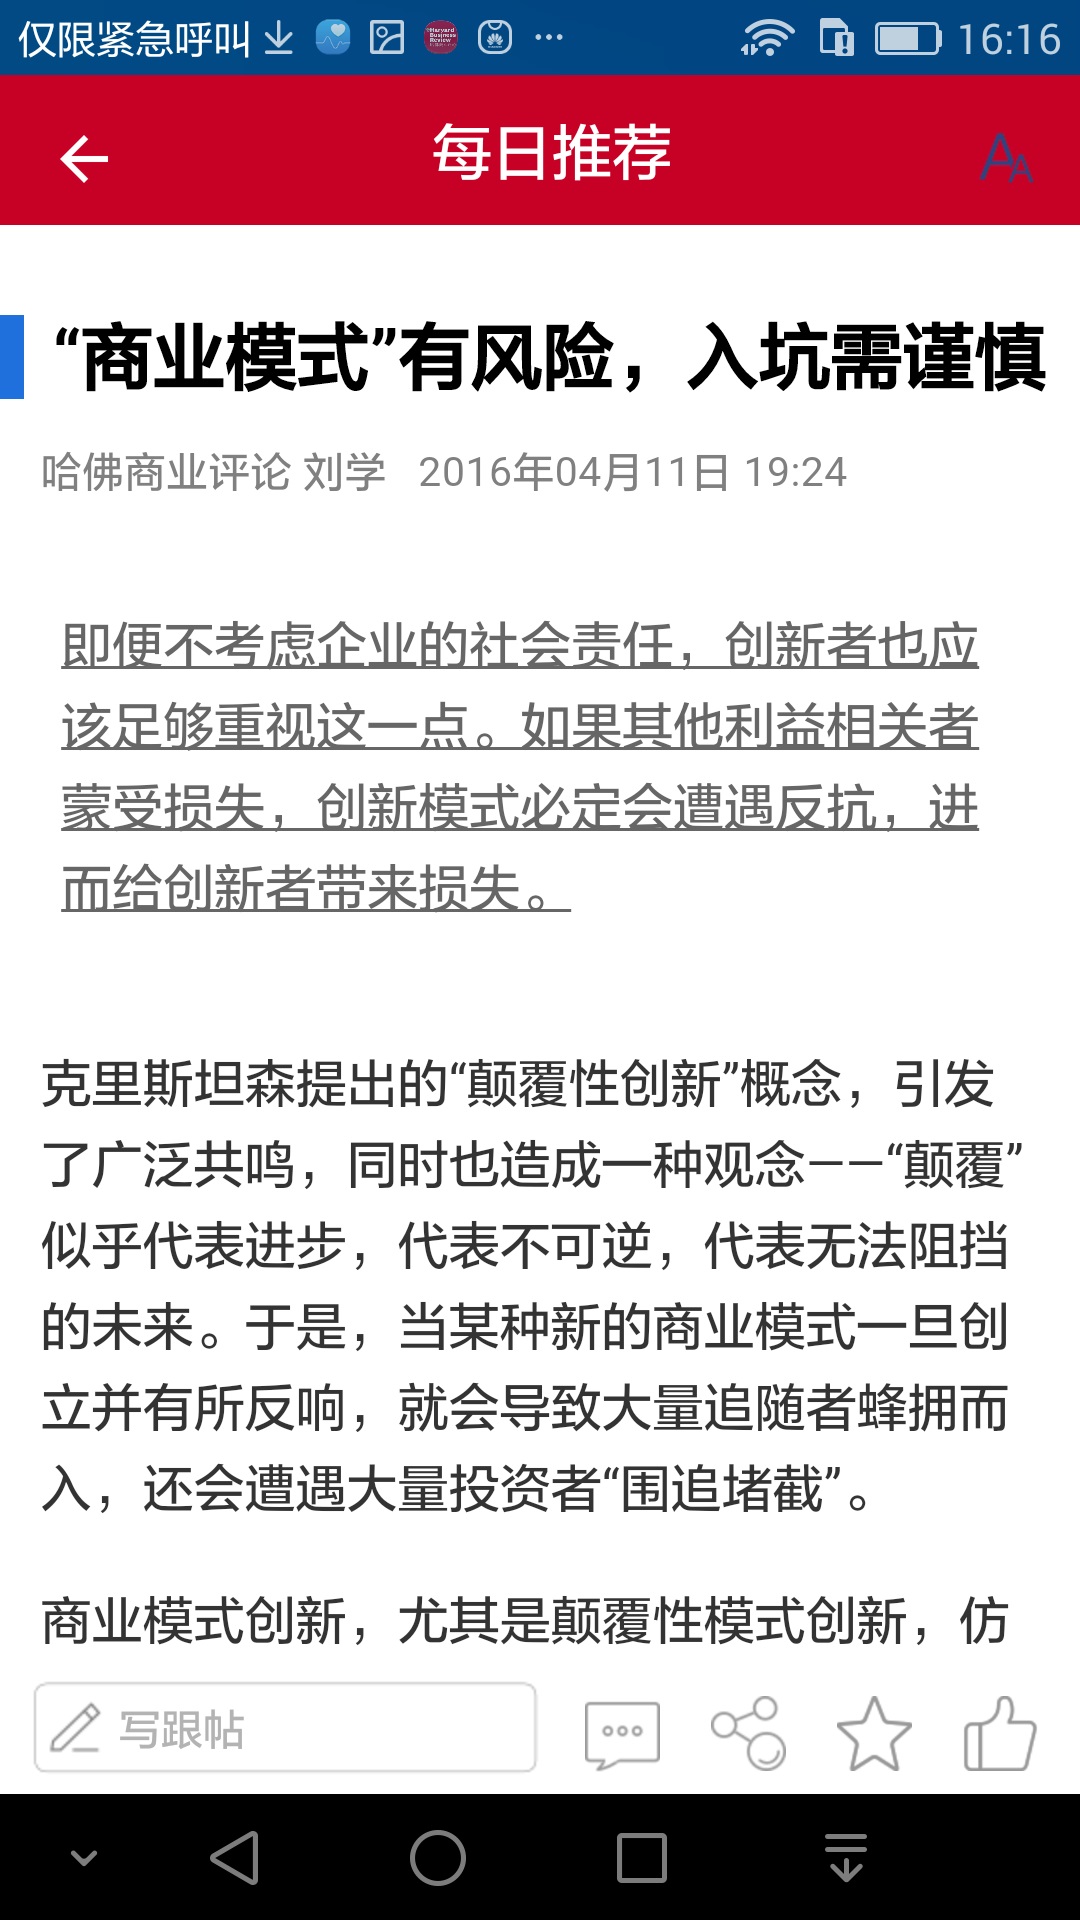 哈佛商业评论中文版下载-哈佛商业评论appv2.9.7.11 安卓版